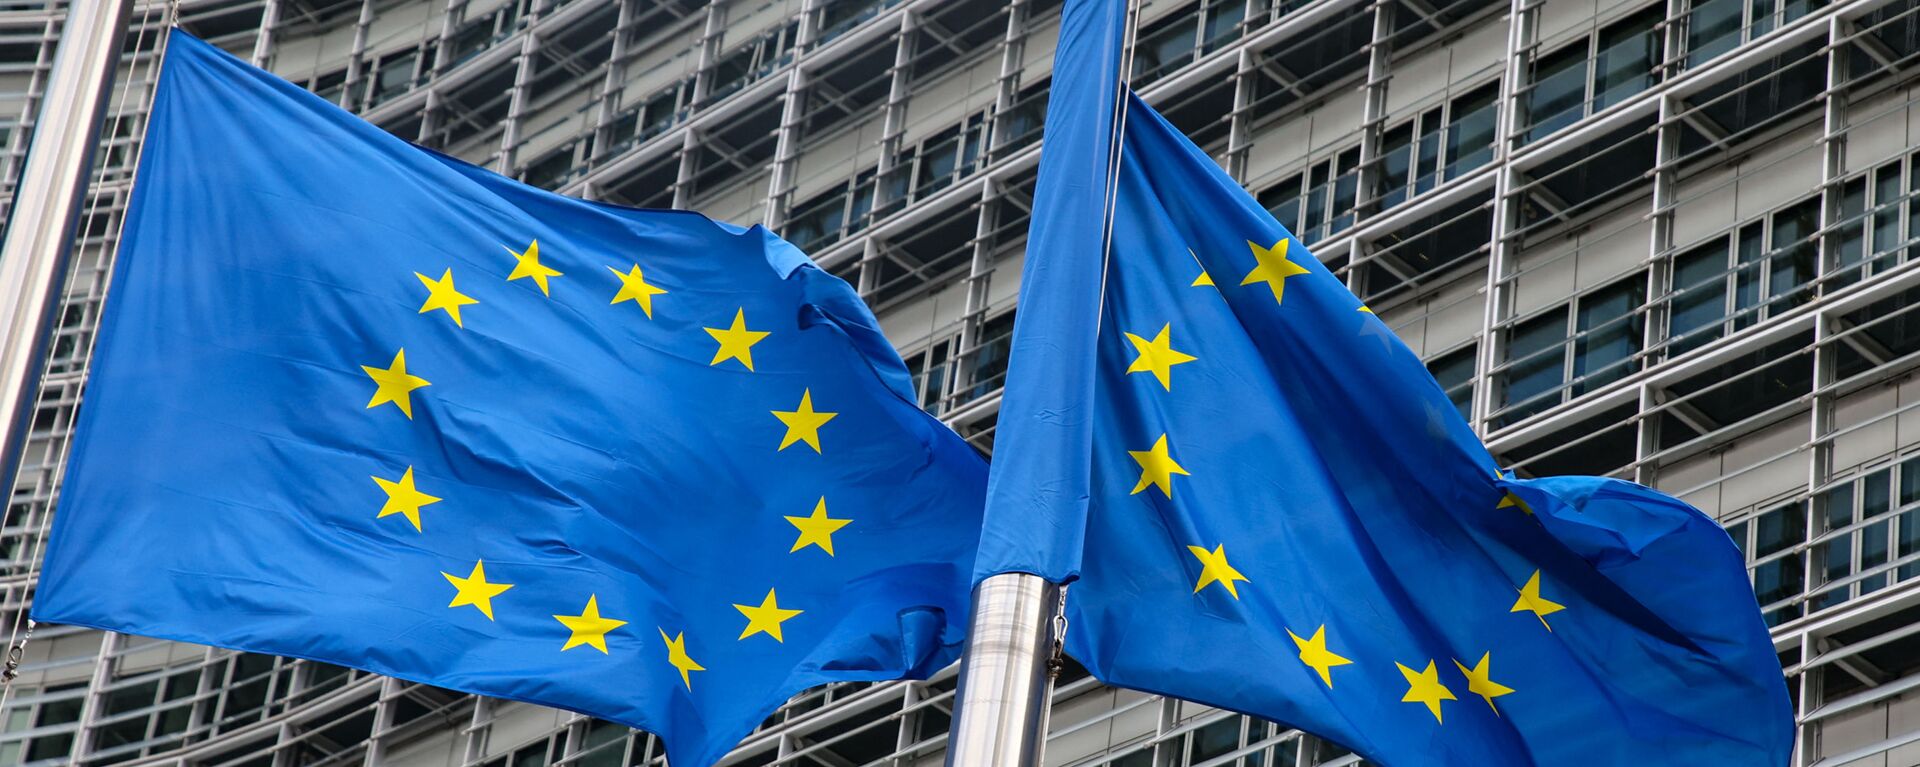 Флаги Европейского союза у штаб-квартиры Европейской комиссии в Брюсселе  - Sputnik Литва, 1920, 19.04.2021